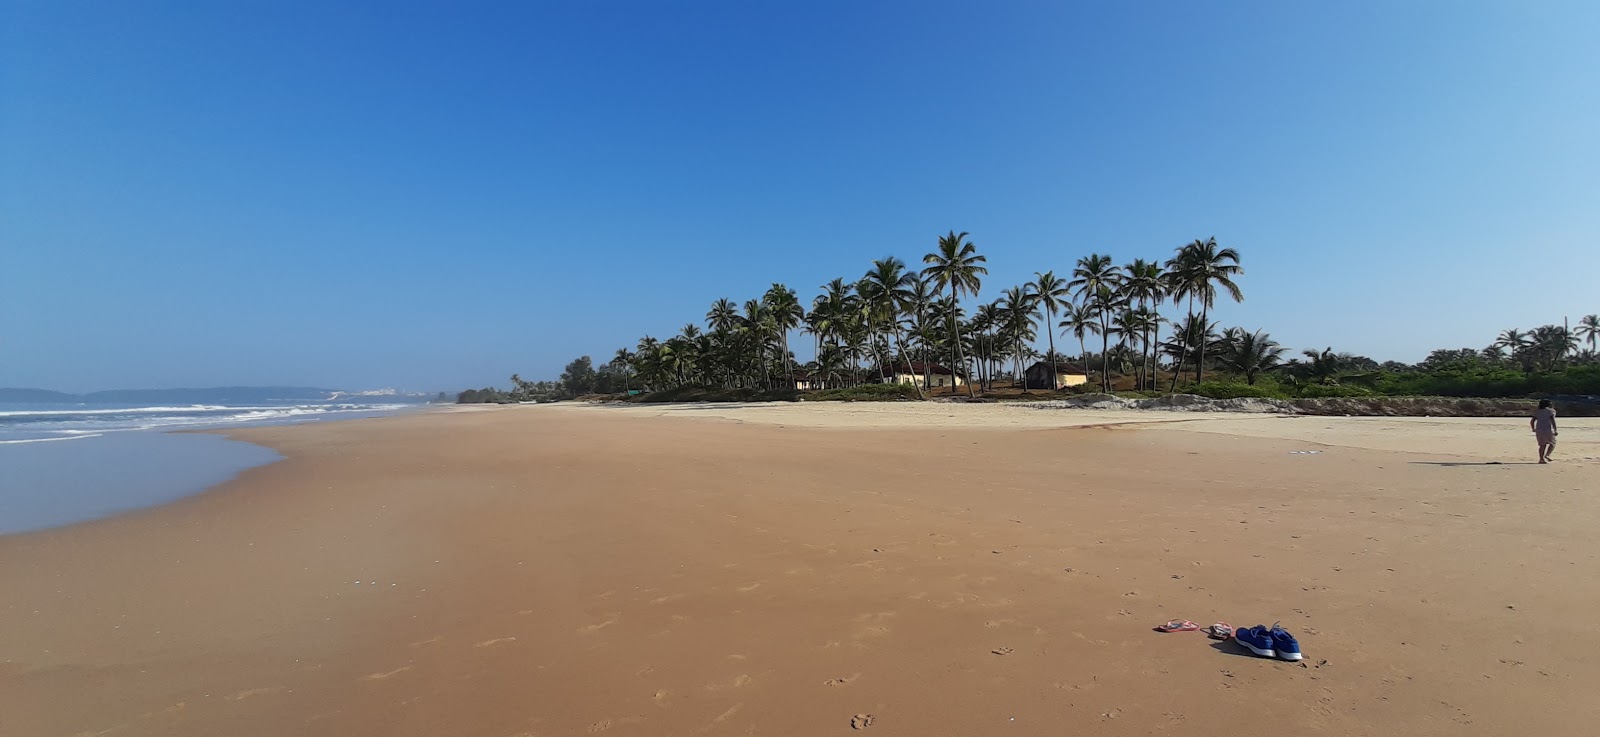 Foto von Velsao Beach mit langer gerader strand